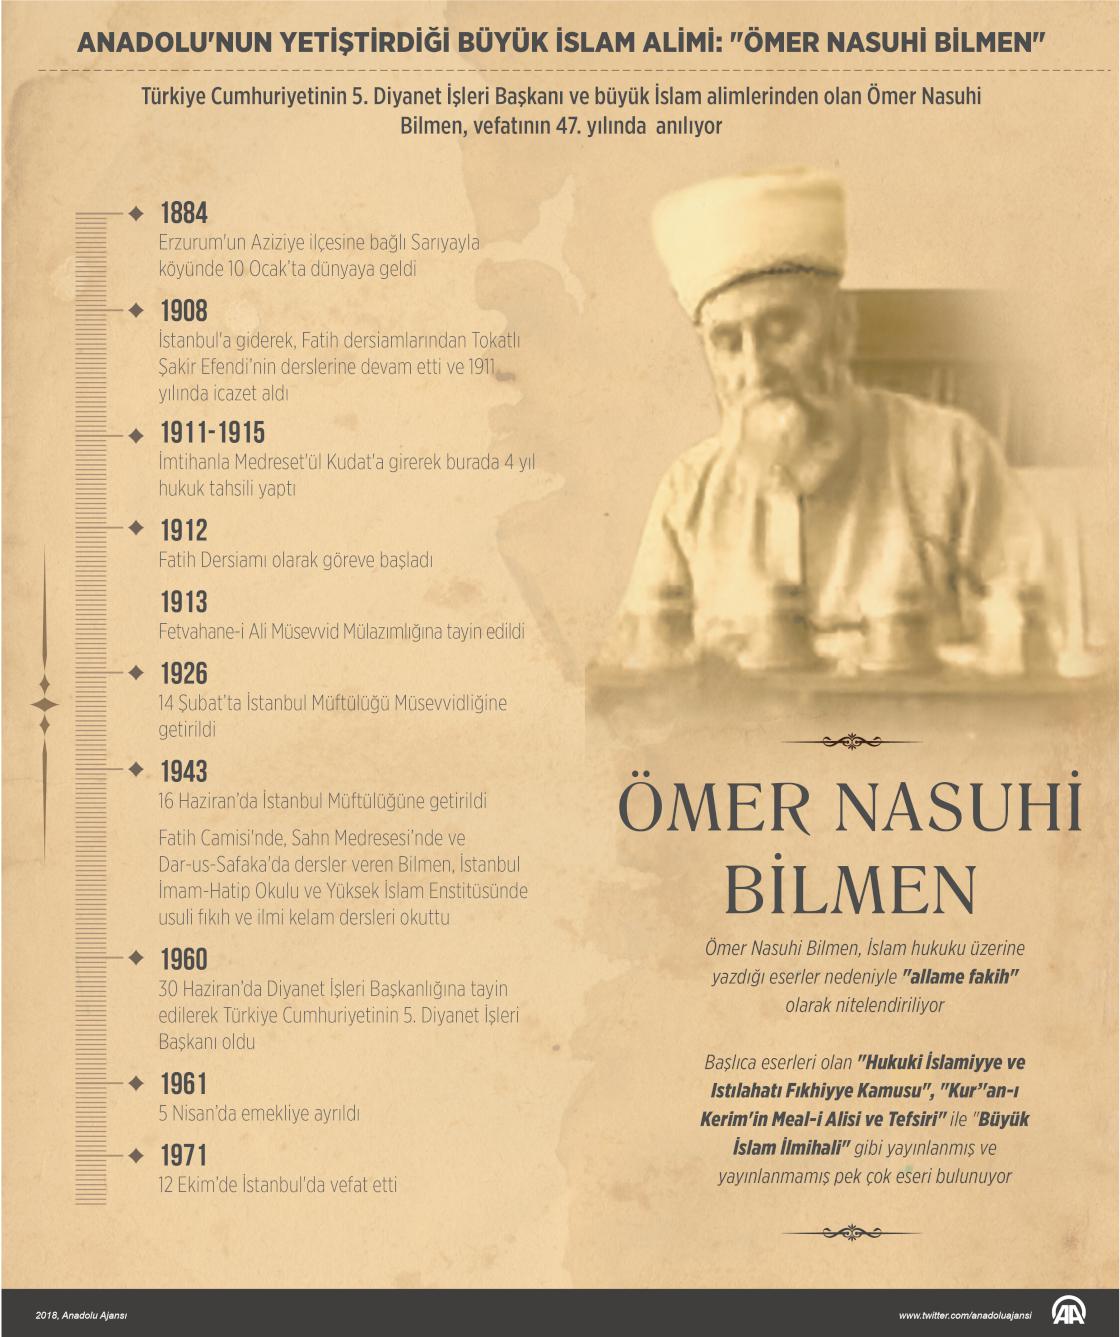 Anadolu'nun yetiştirdiği büyük İslam alimi: "Ömer Nasuhi Bilmen"